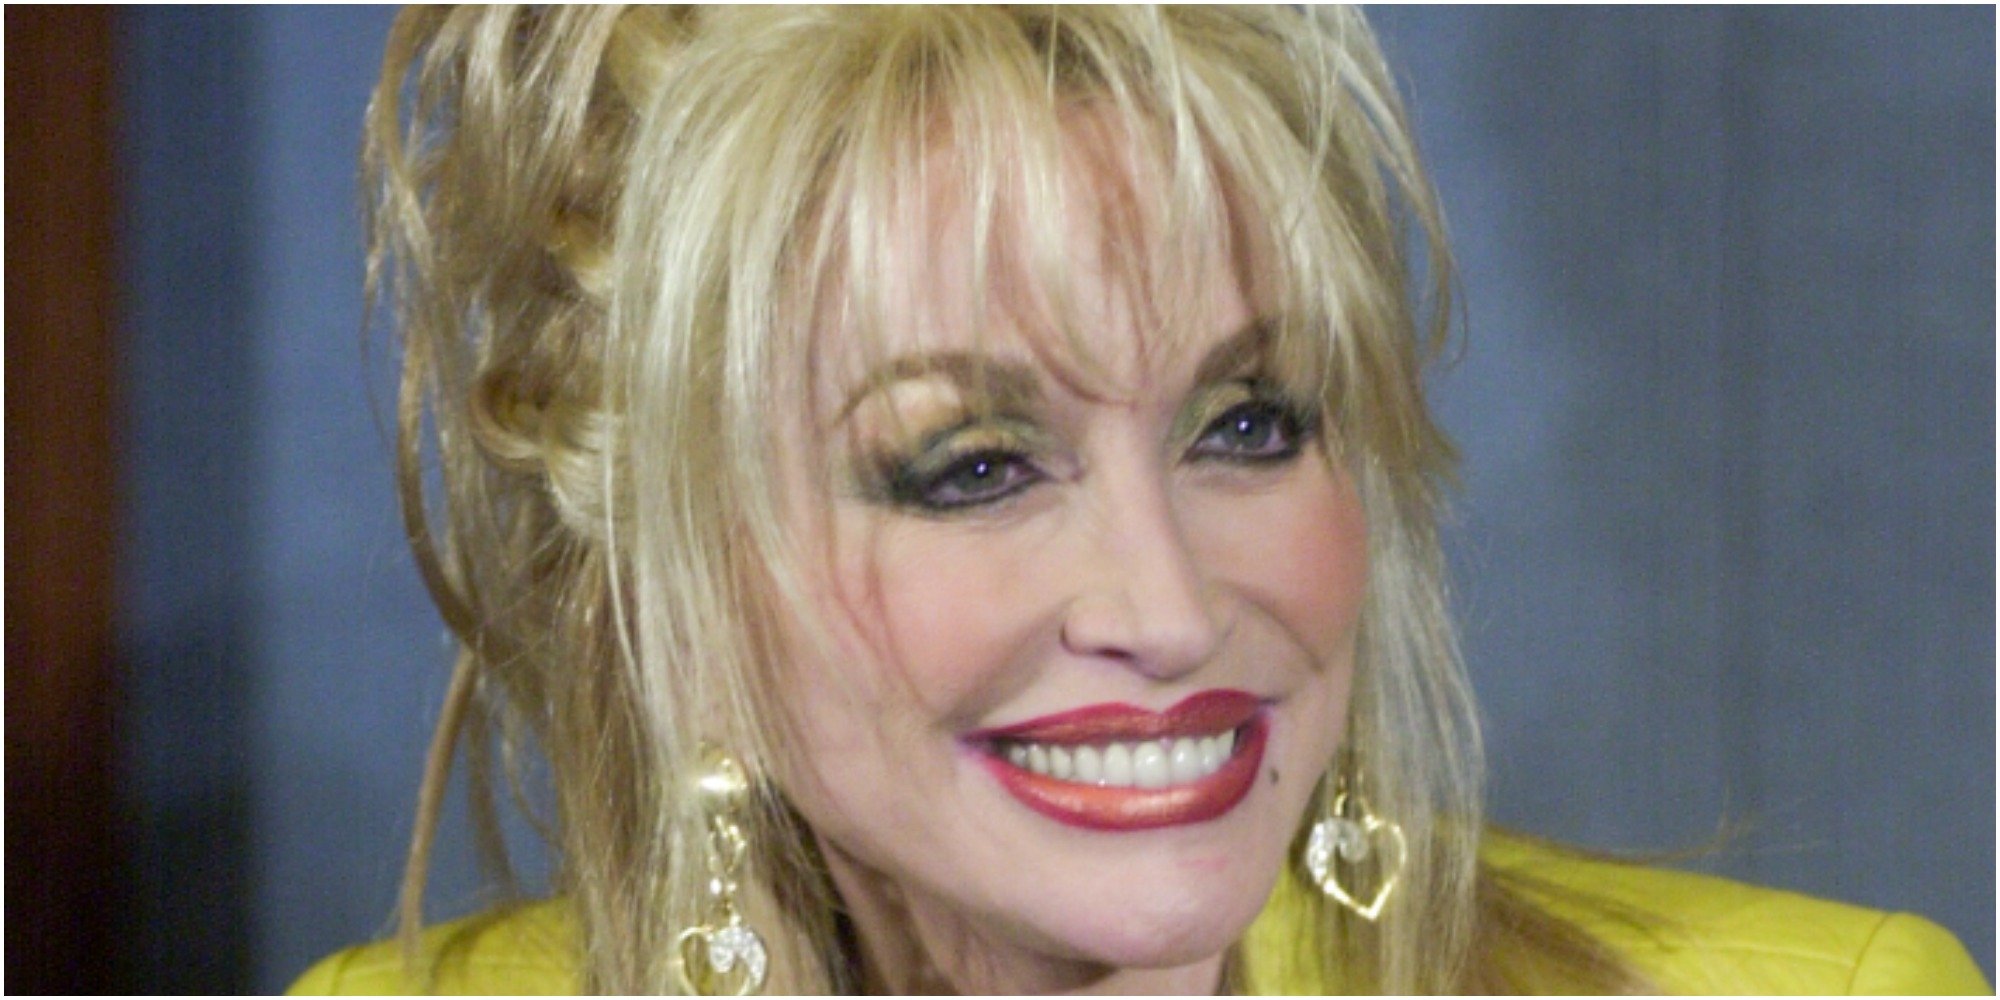 Dolly Parton smiles for a paparazzi photograph.